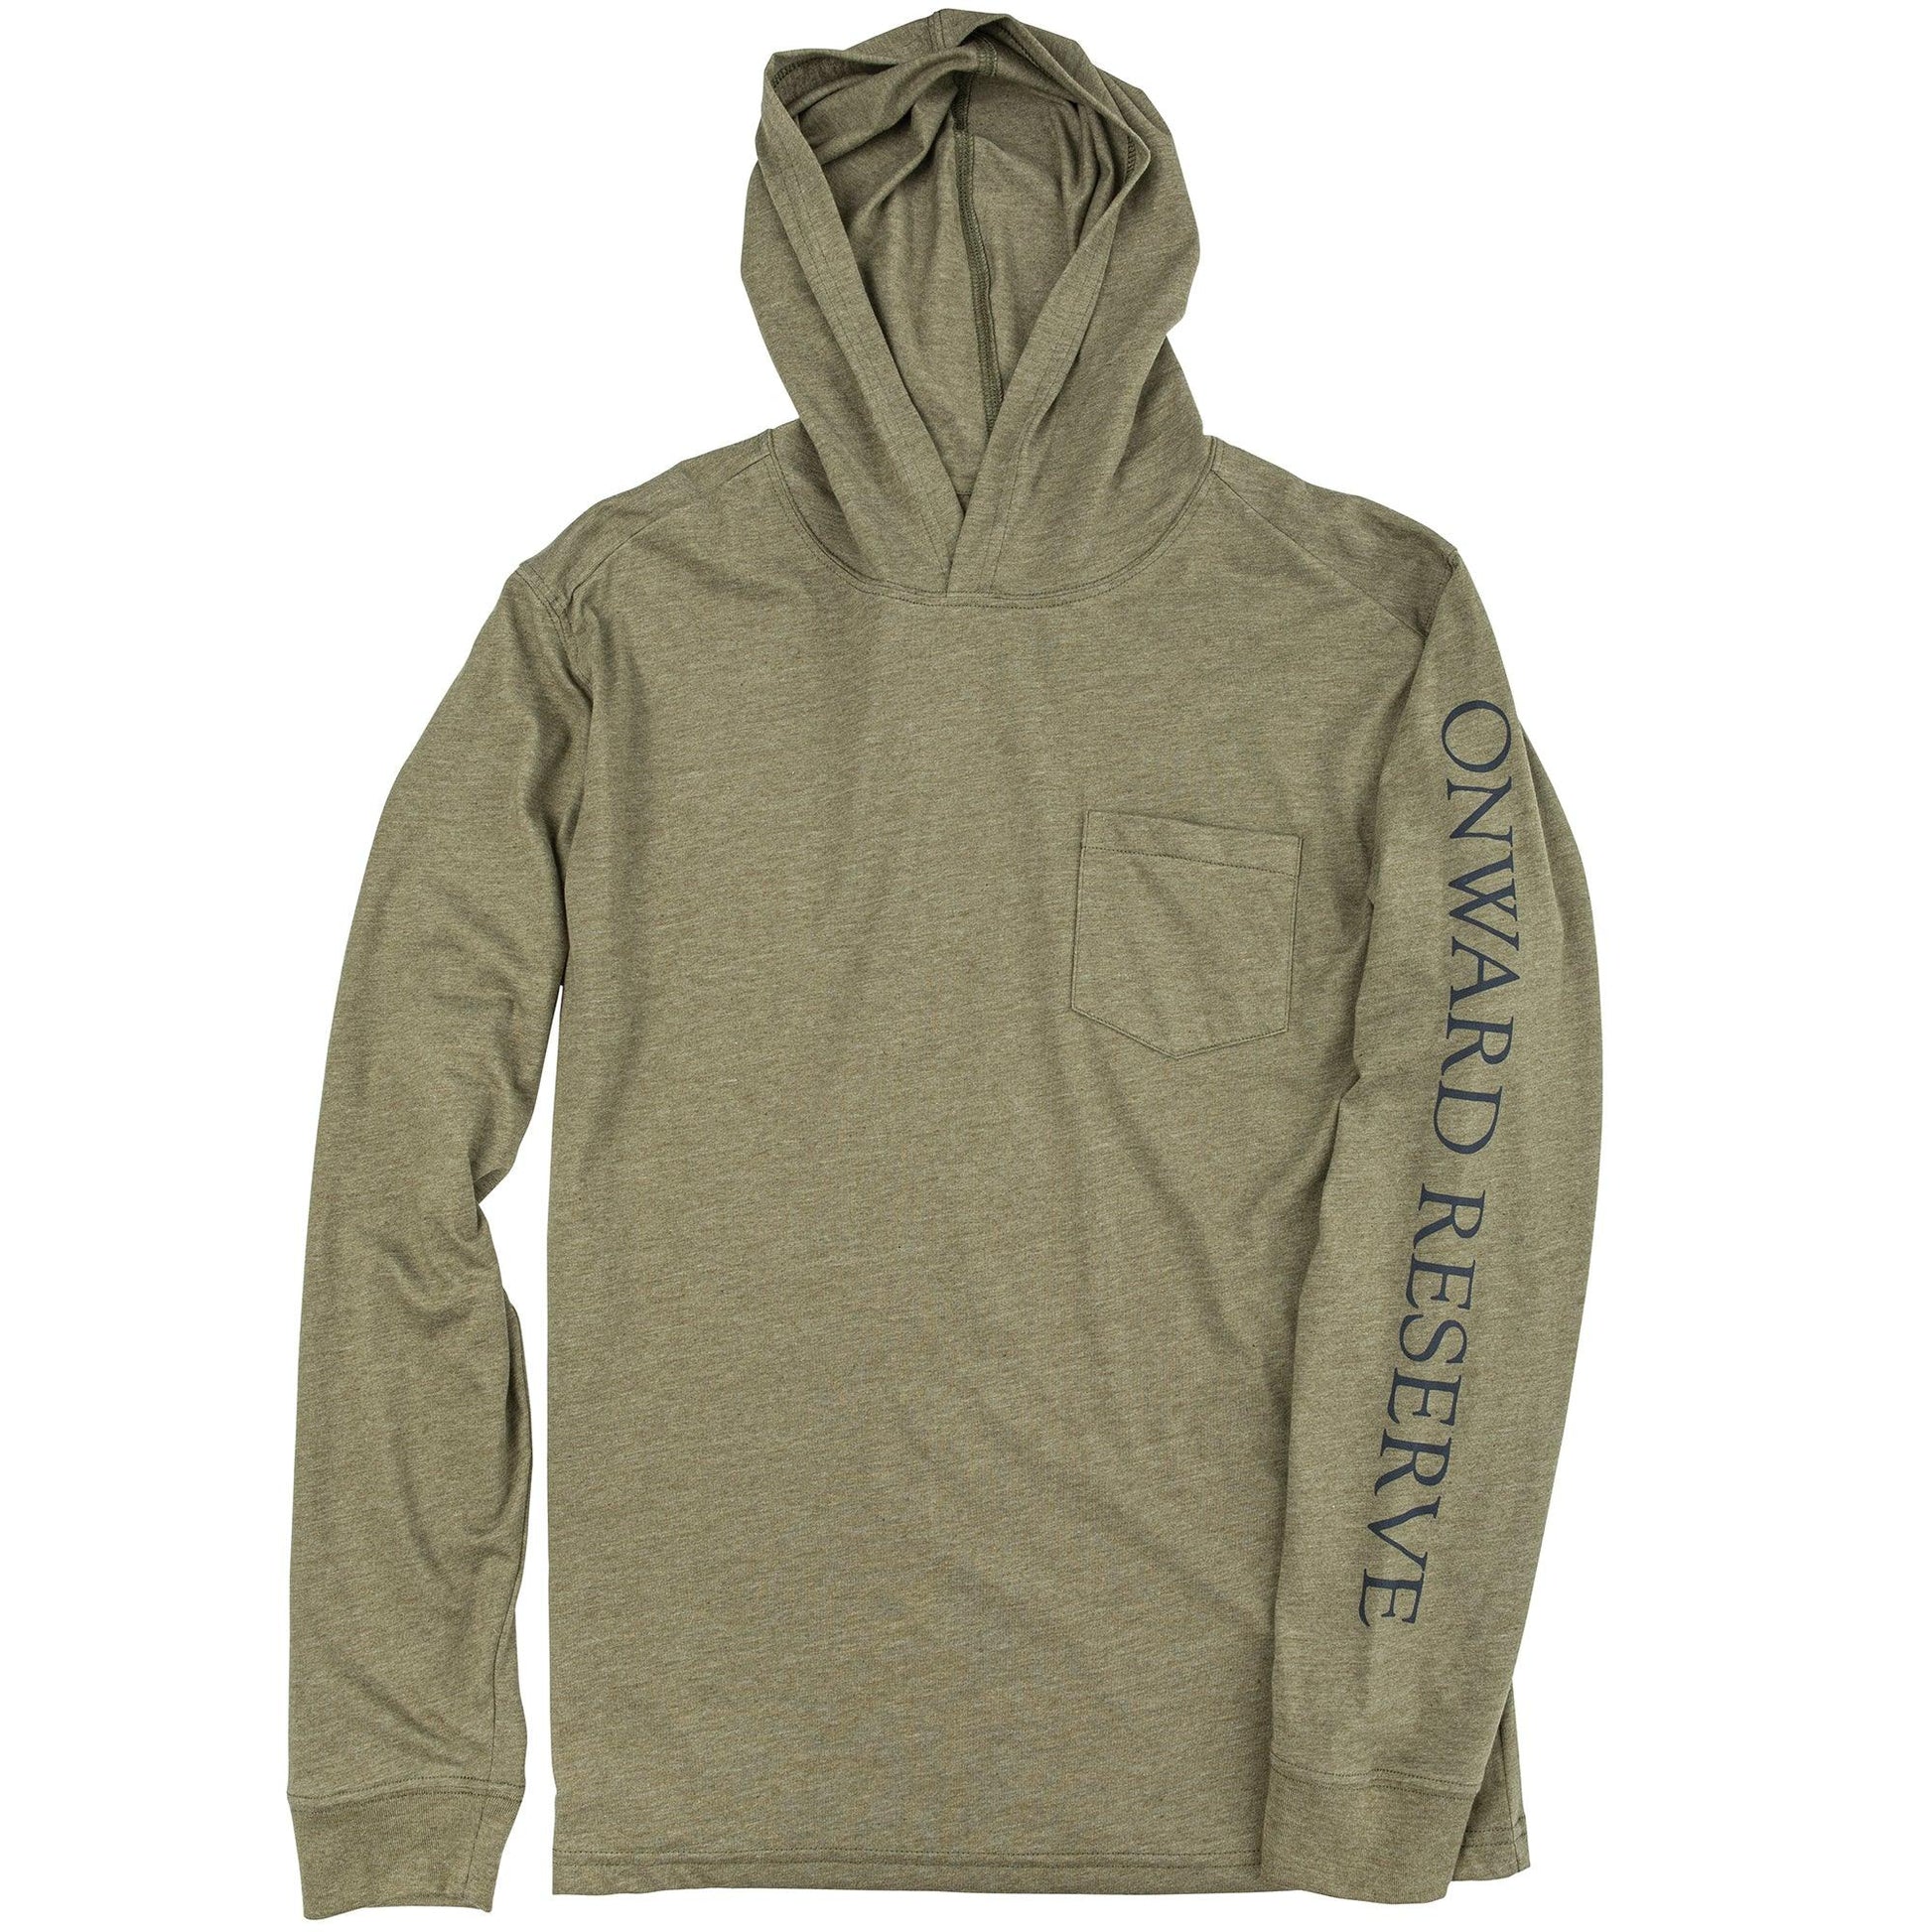 buy mlb hoodie wholesale